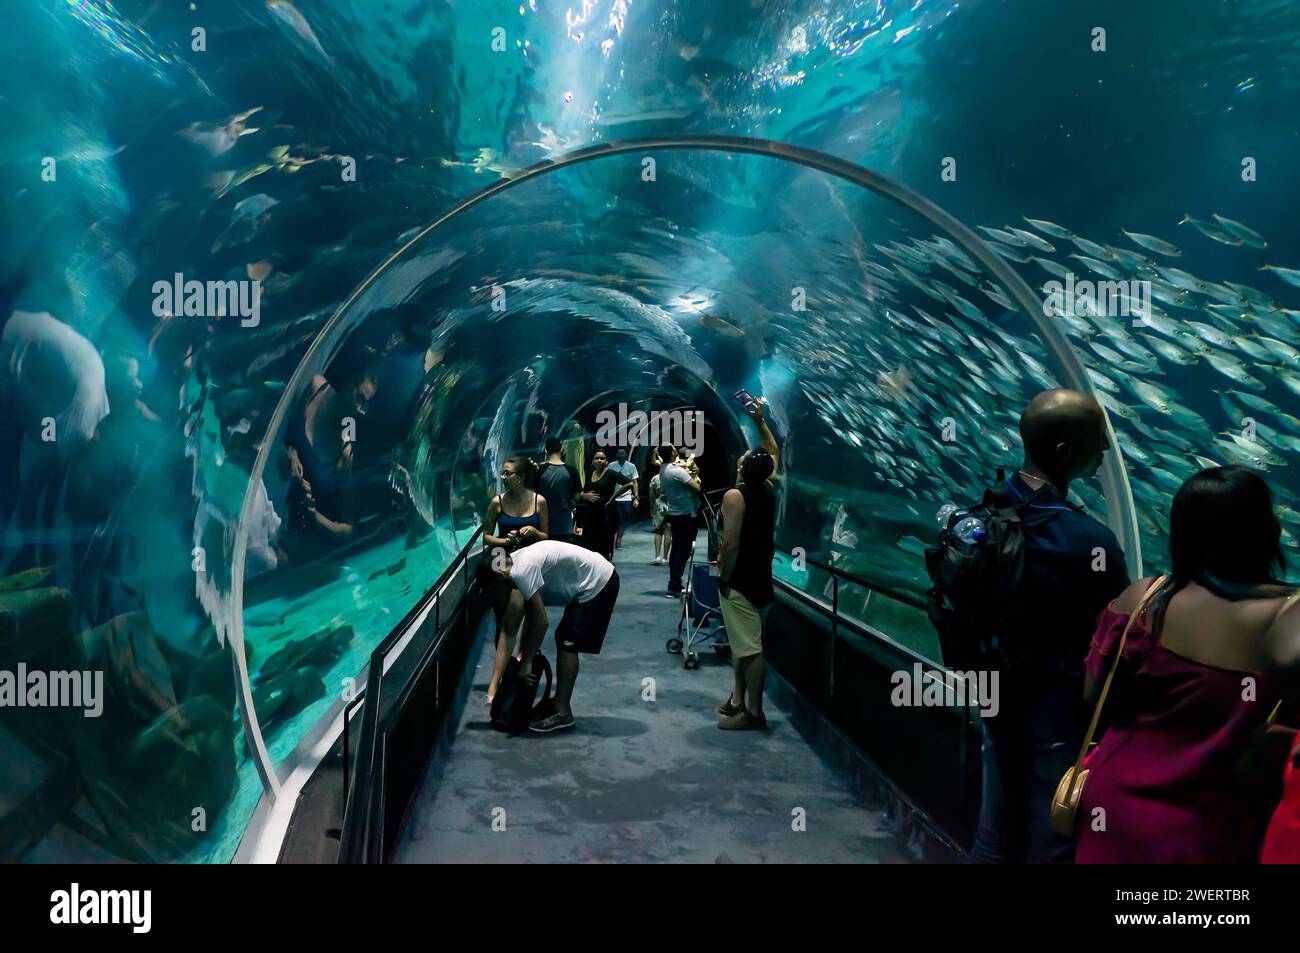 The underwater glass tunnel that runs in the middle of the main big marine aquarium tank of AquaRio public aquarium located in Gamboa district. Stock Photo